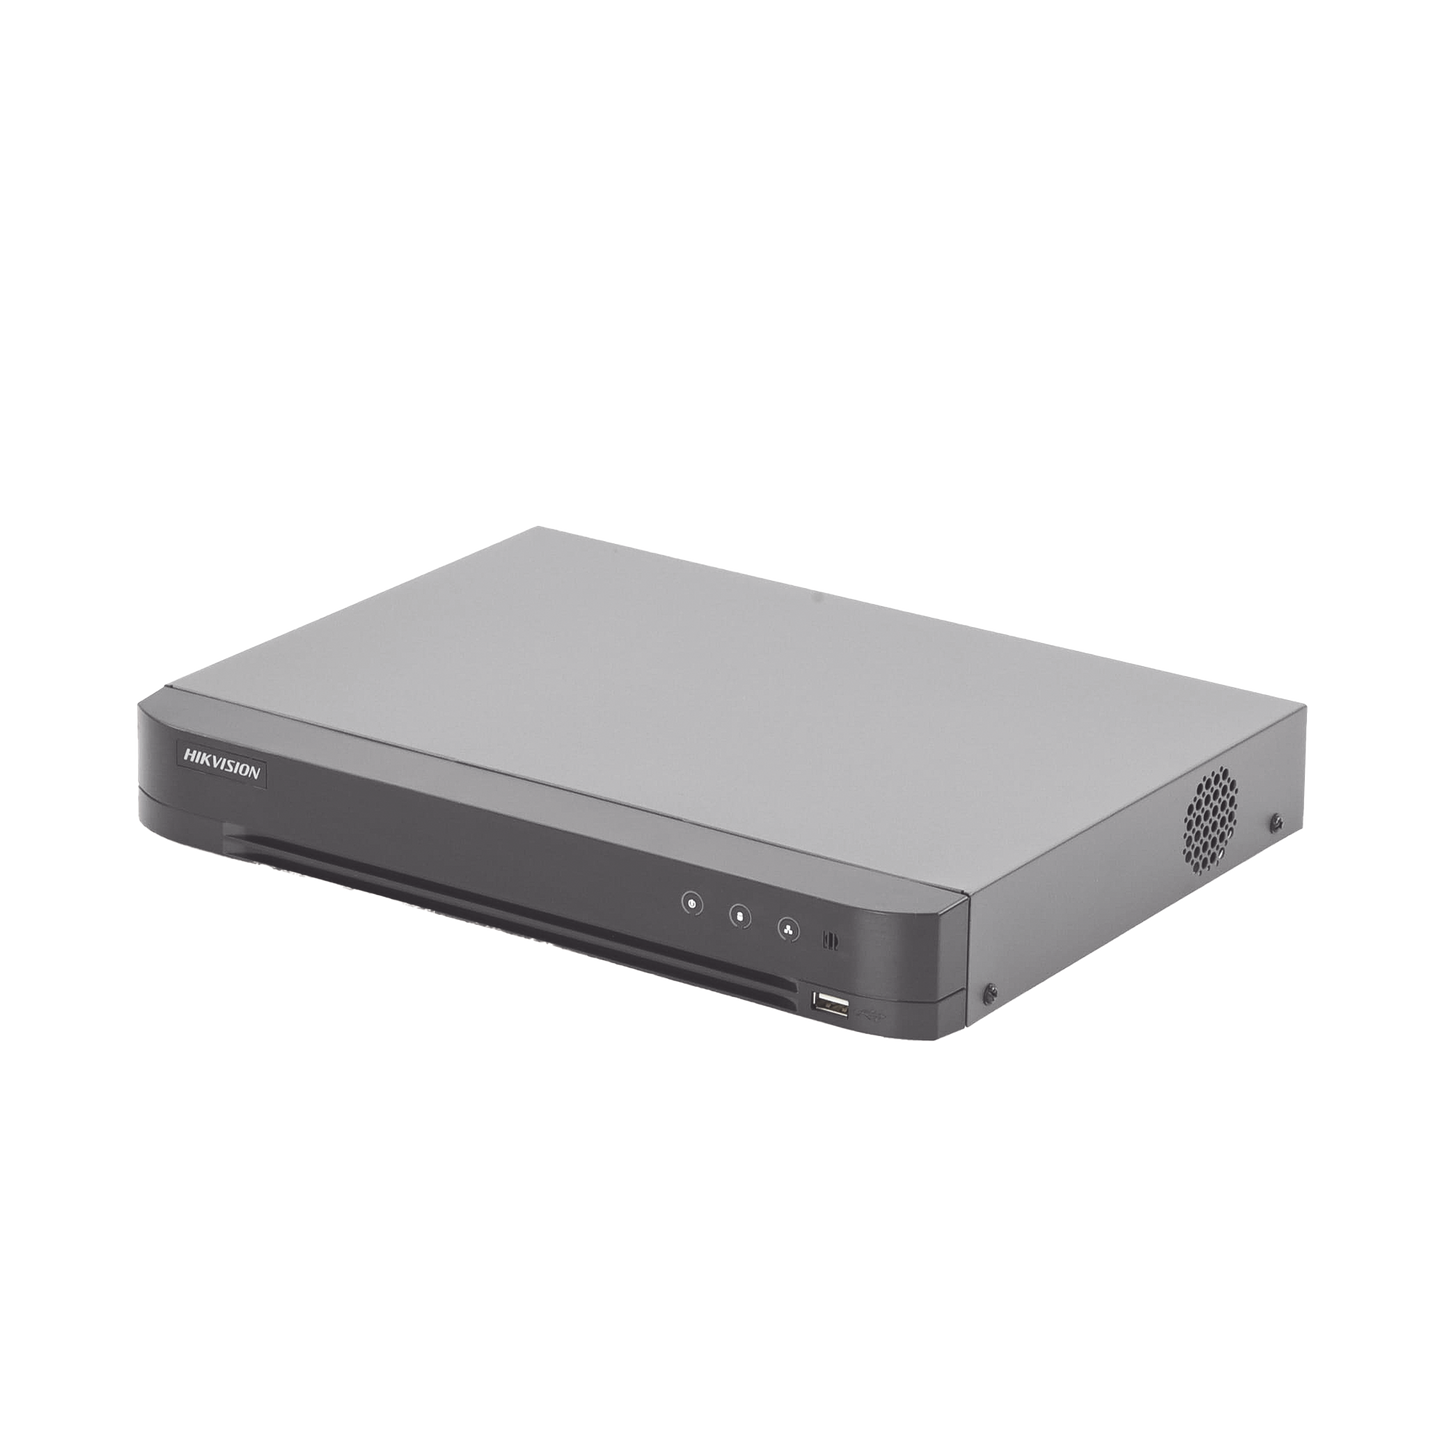 DVR 8 Canales TurboHD + 4 Canales IP / 4 Megapixel Lite - 3K Lite / Acusense (Evita Falsas Alarmas) / Audio por Coaxitron / 1 Bahía de Disco Duro / 8 Entrada de Audio Fisicas (Microfono por Separado) / H.265+ / Salida de Video en Full HD